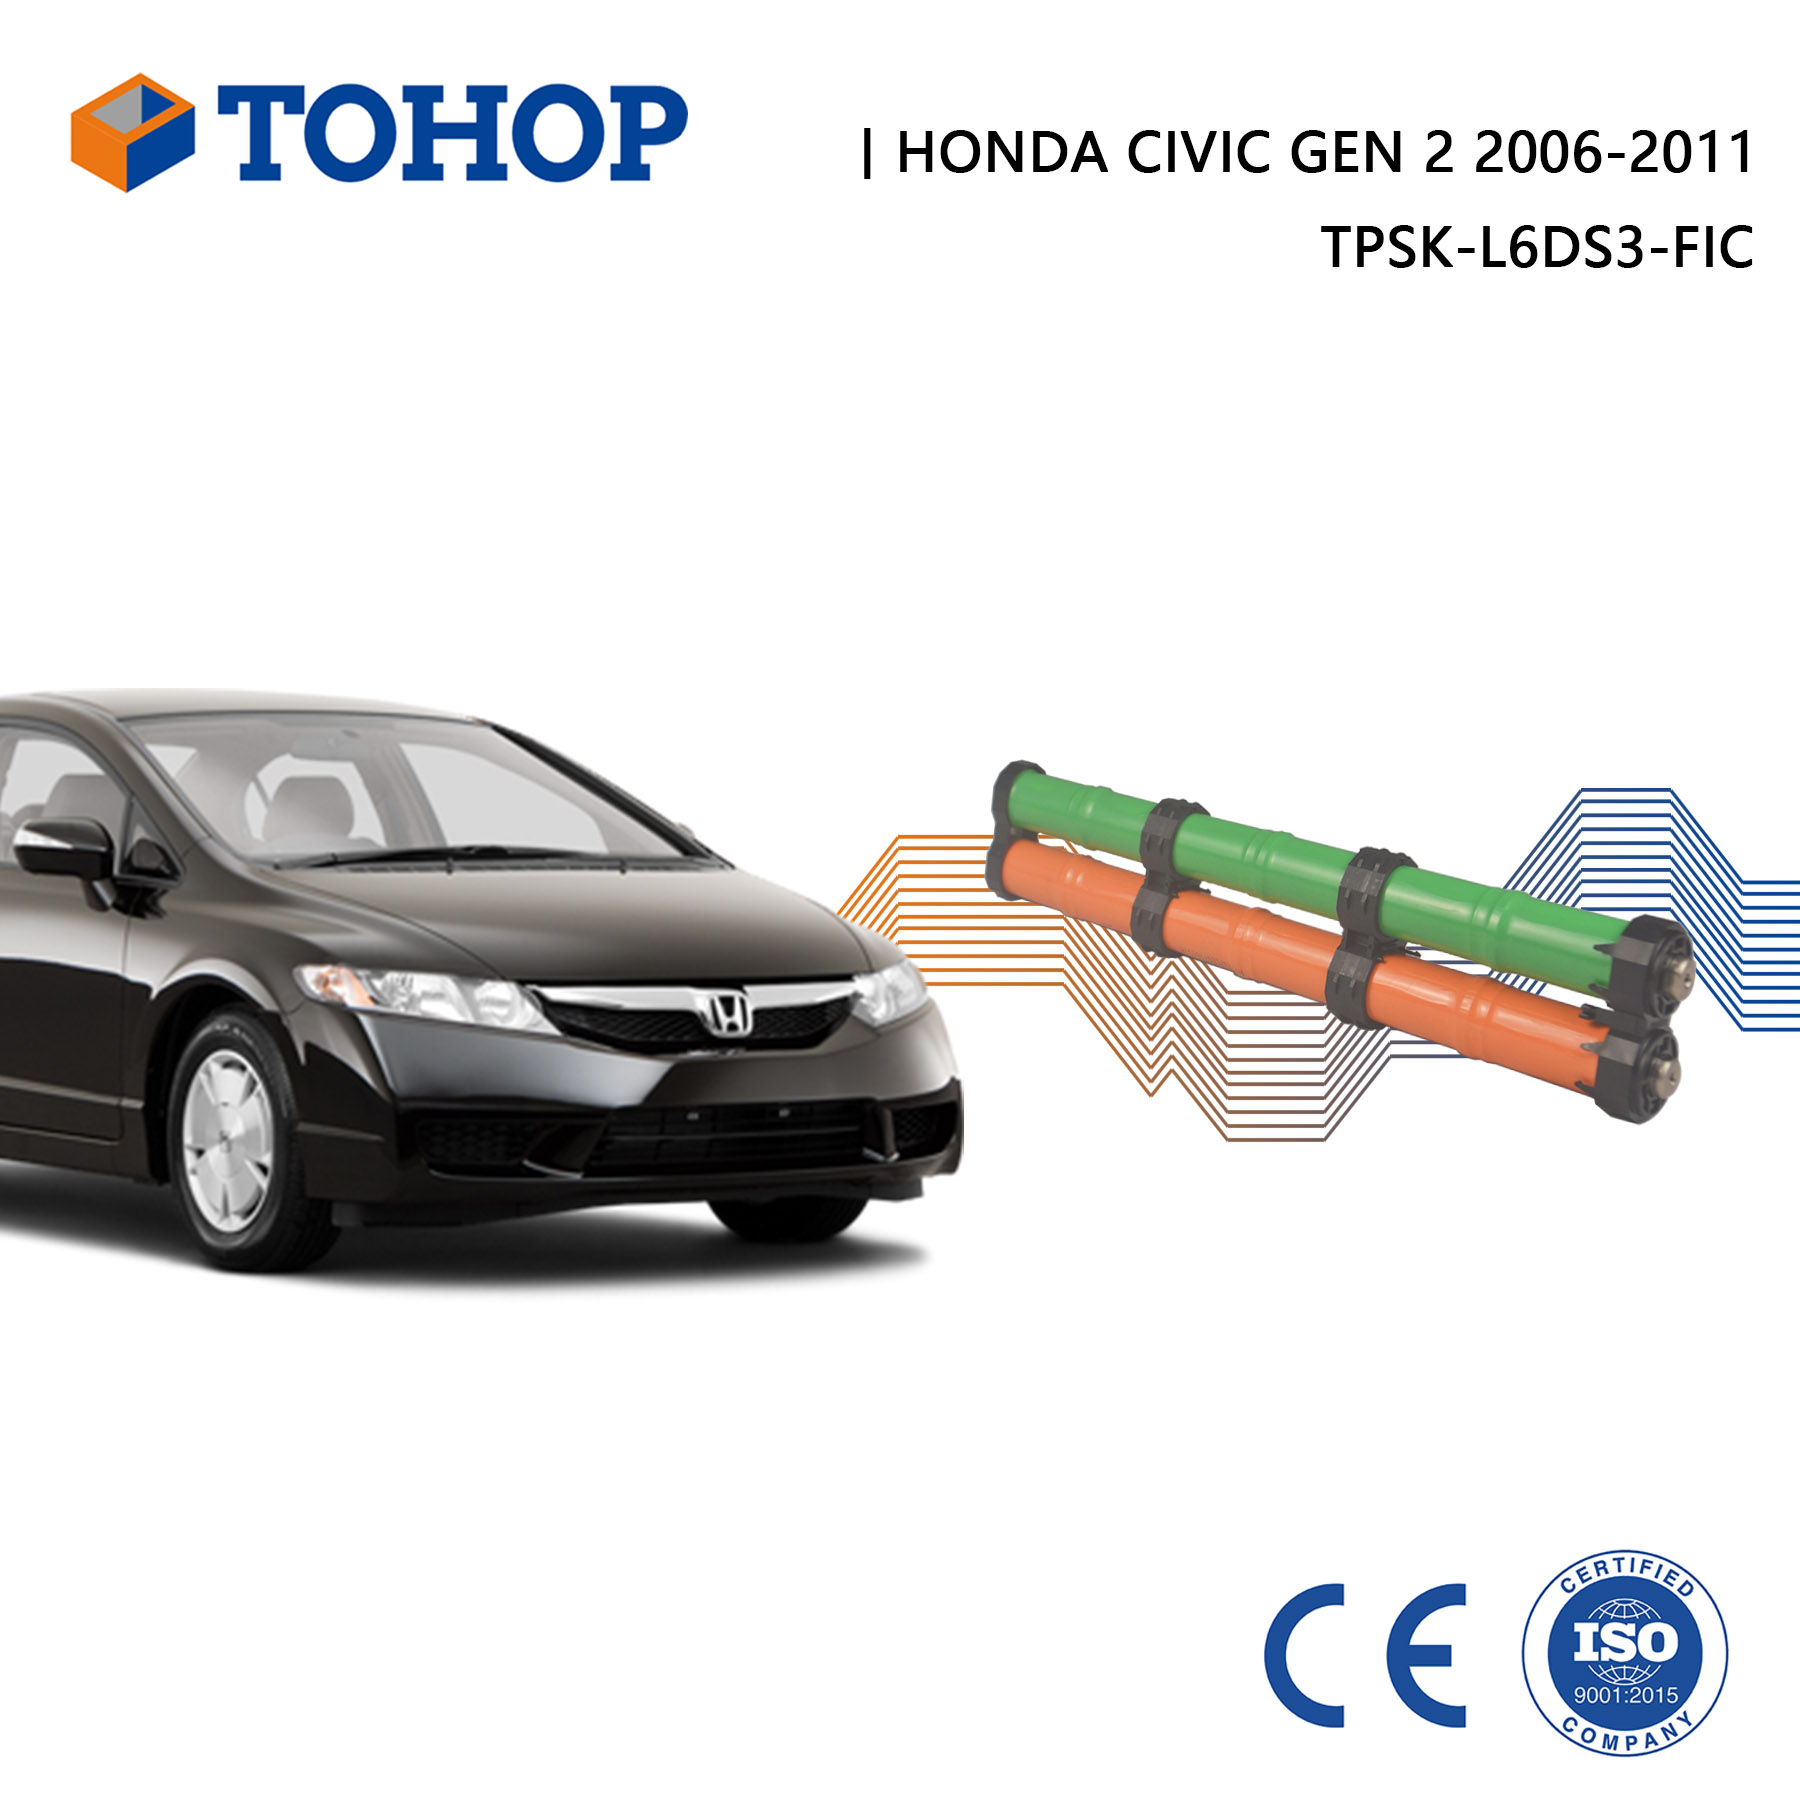 Batterie hybride neuve pour cellule de rechange Honda Civic Gen 2 14,4 V 6,5 Ah.